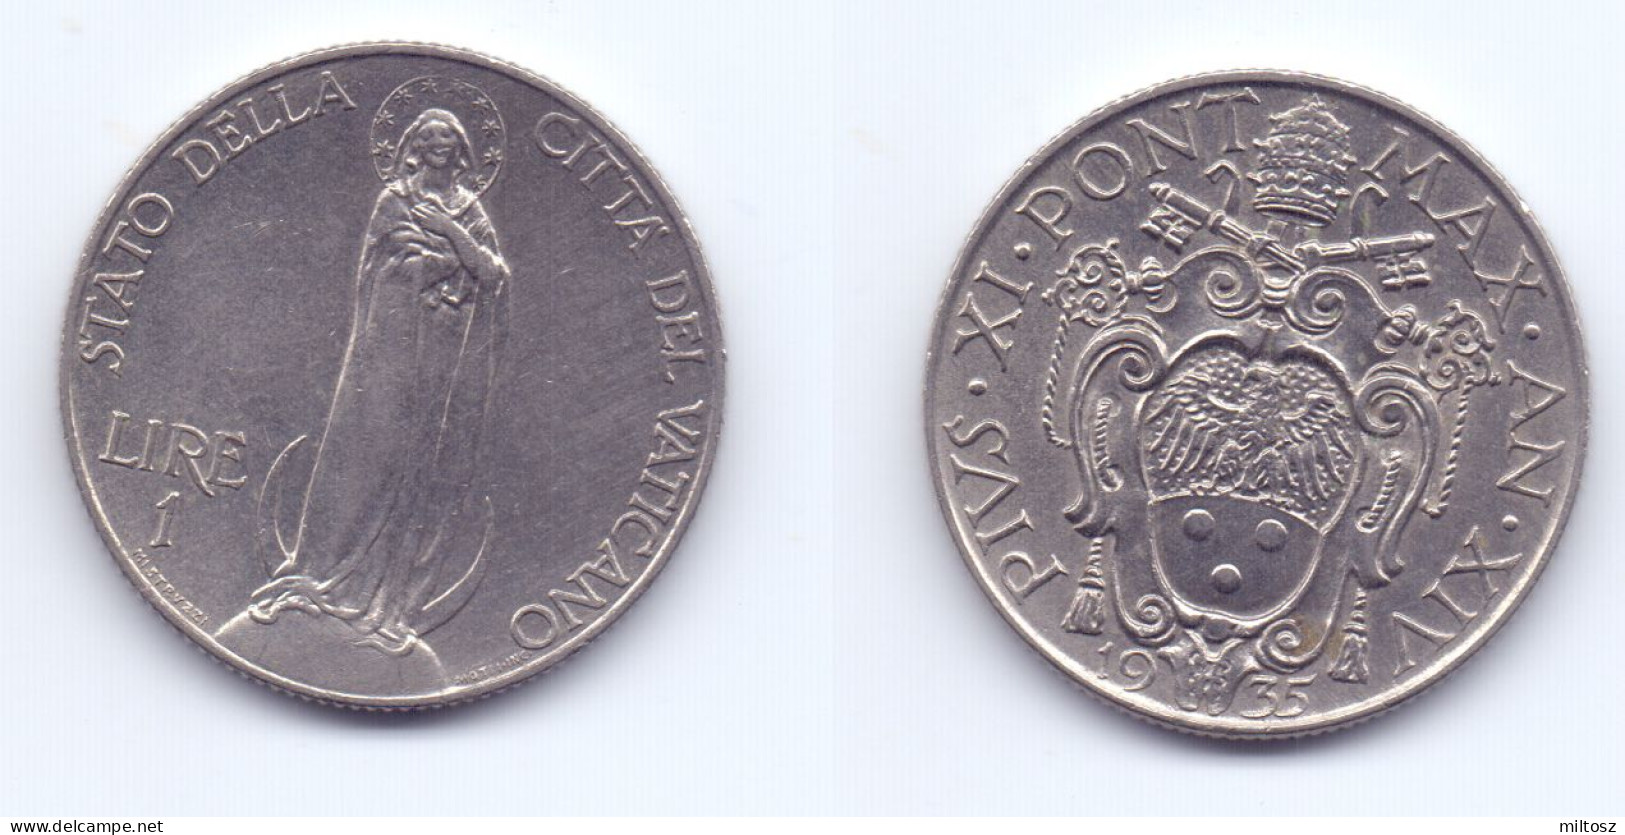 Vatican 1 Lira 1935 - Vatikan